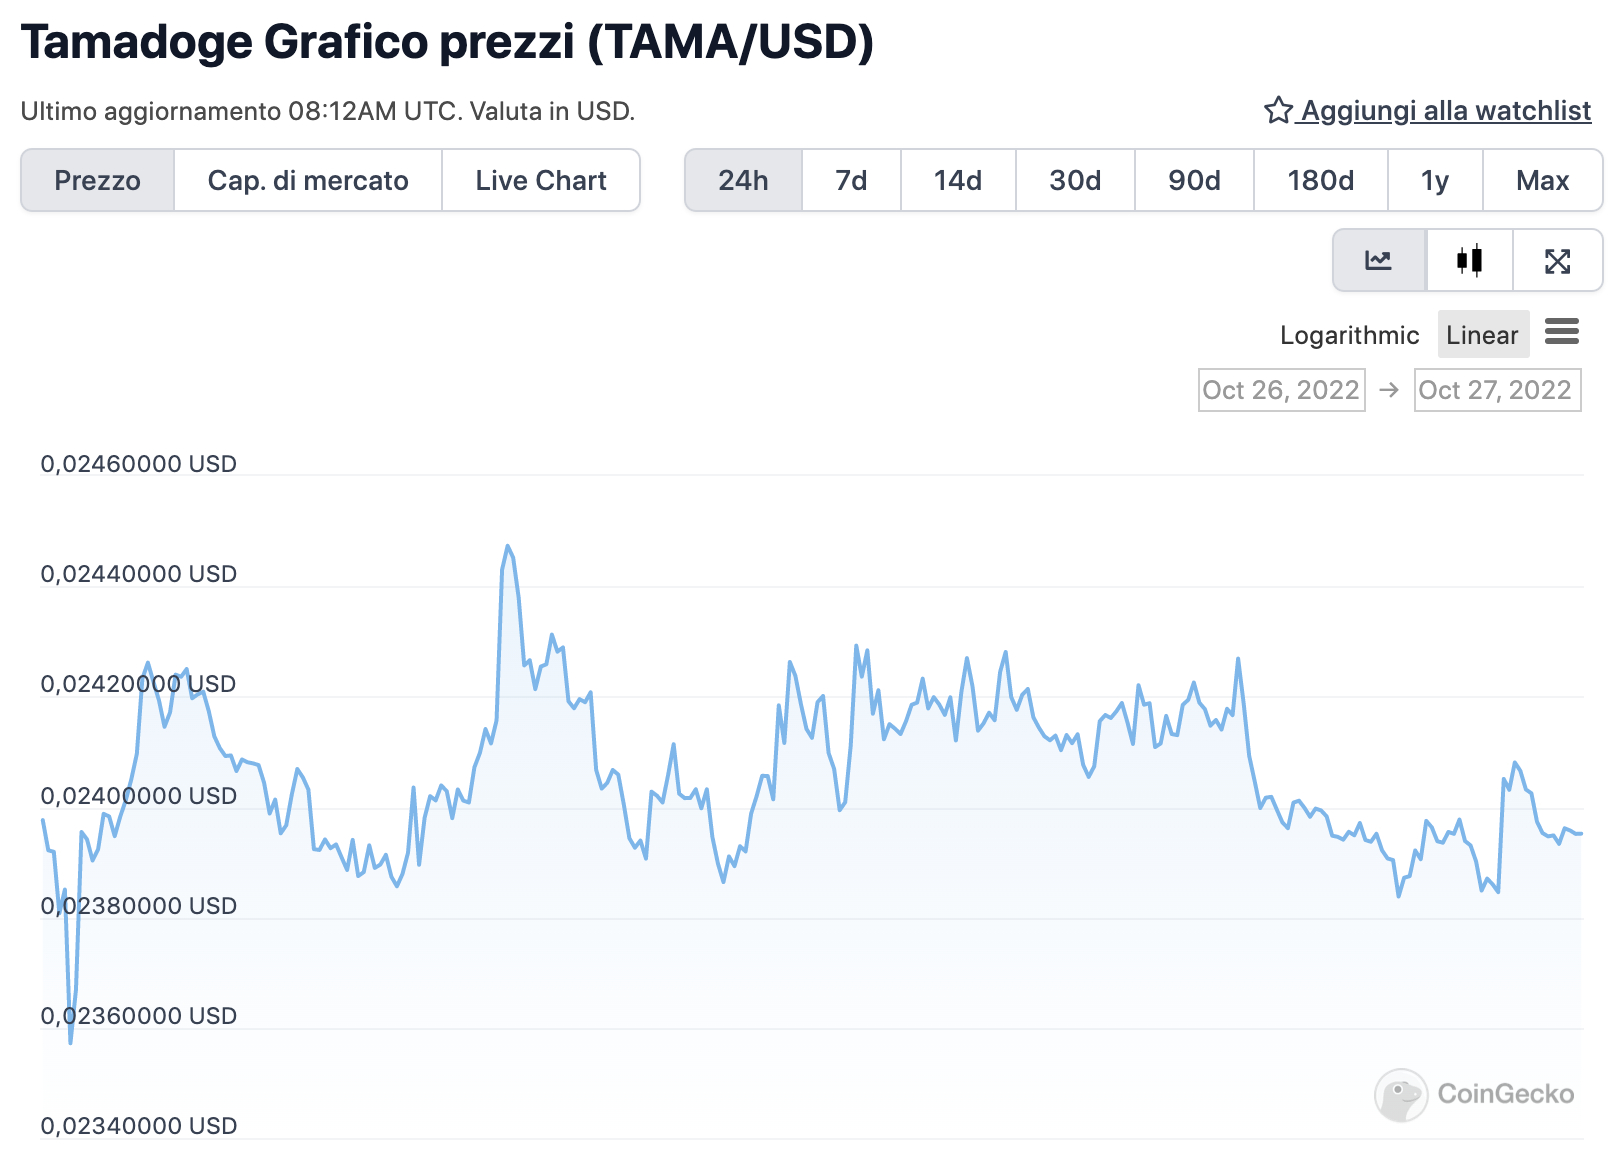 Grafico di TAMA nelle ultime 24 ore  - Fonte: CoinGeko